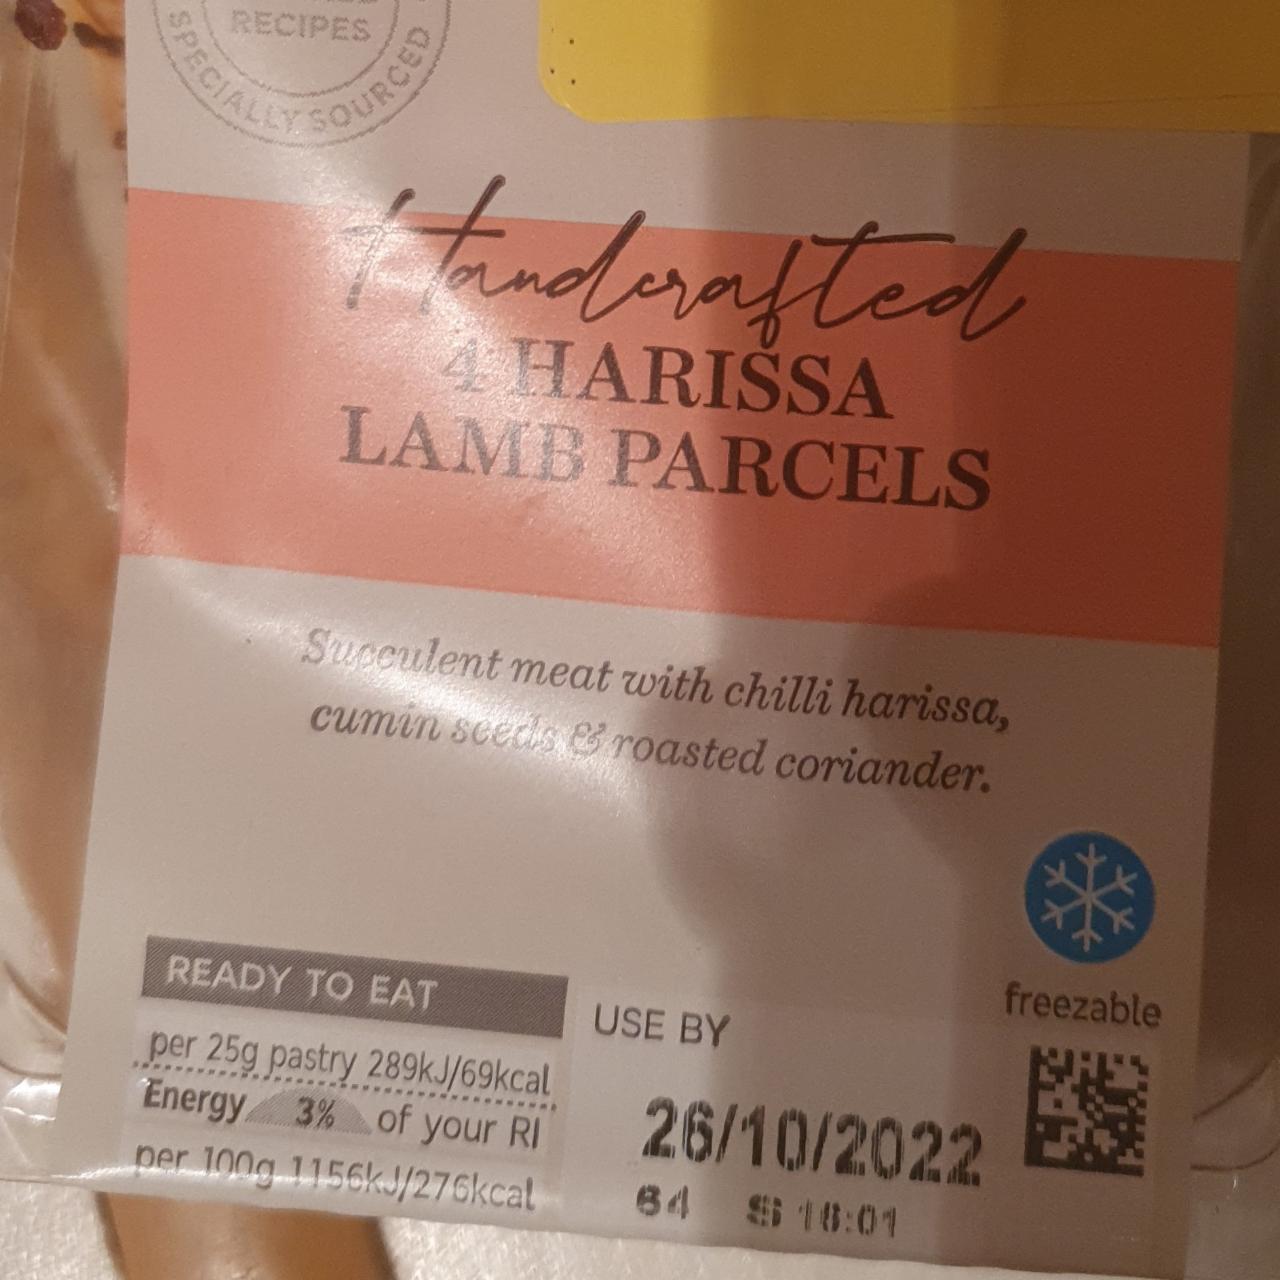 Fotografie - 4 Harissa lamb parcels M&S Food